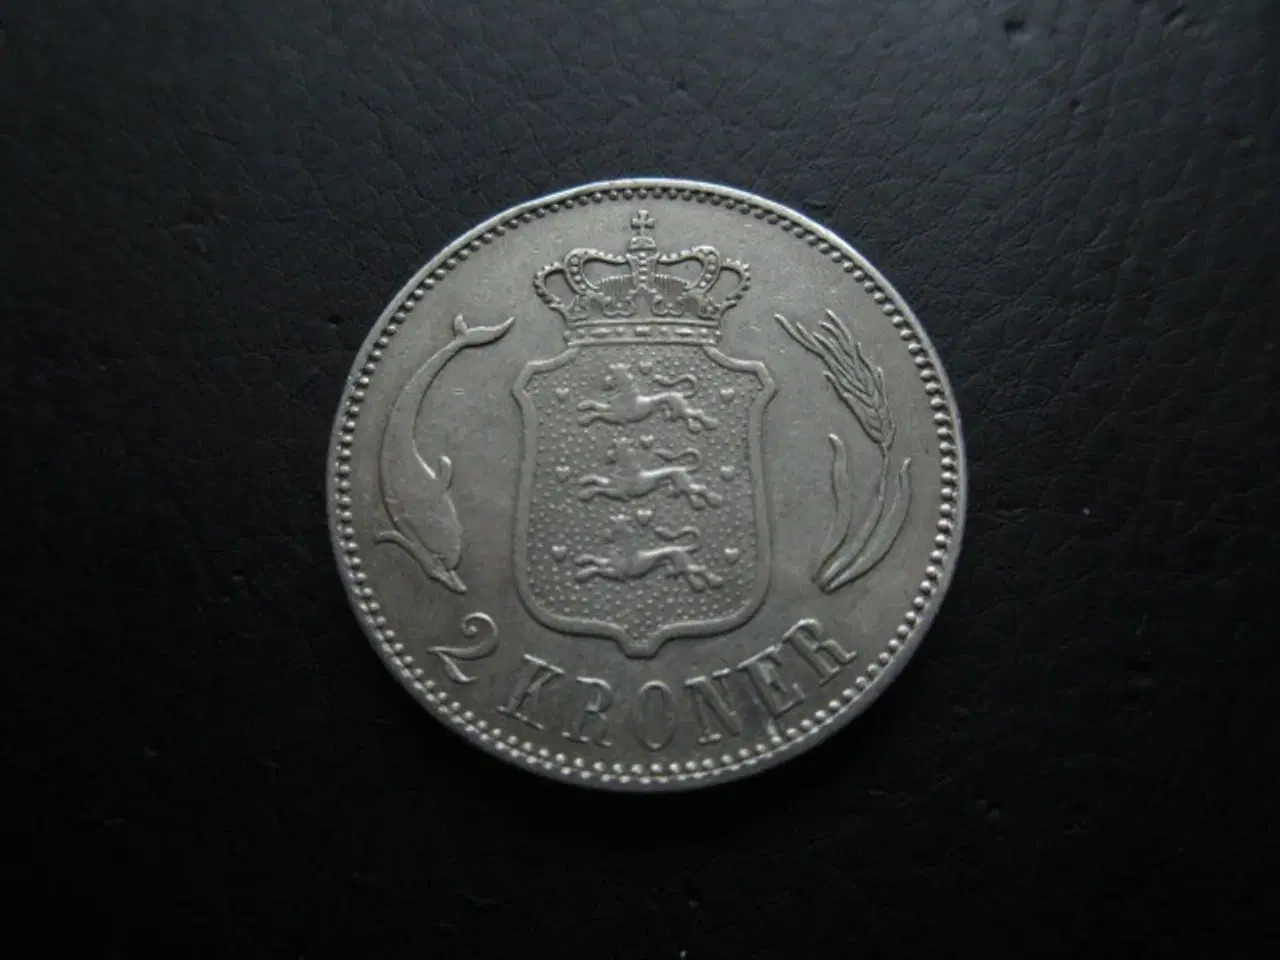 Billede 2 - 2 kroner 1875 detaljeret eksemplar